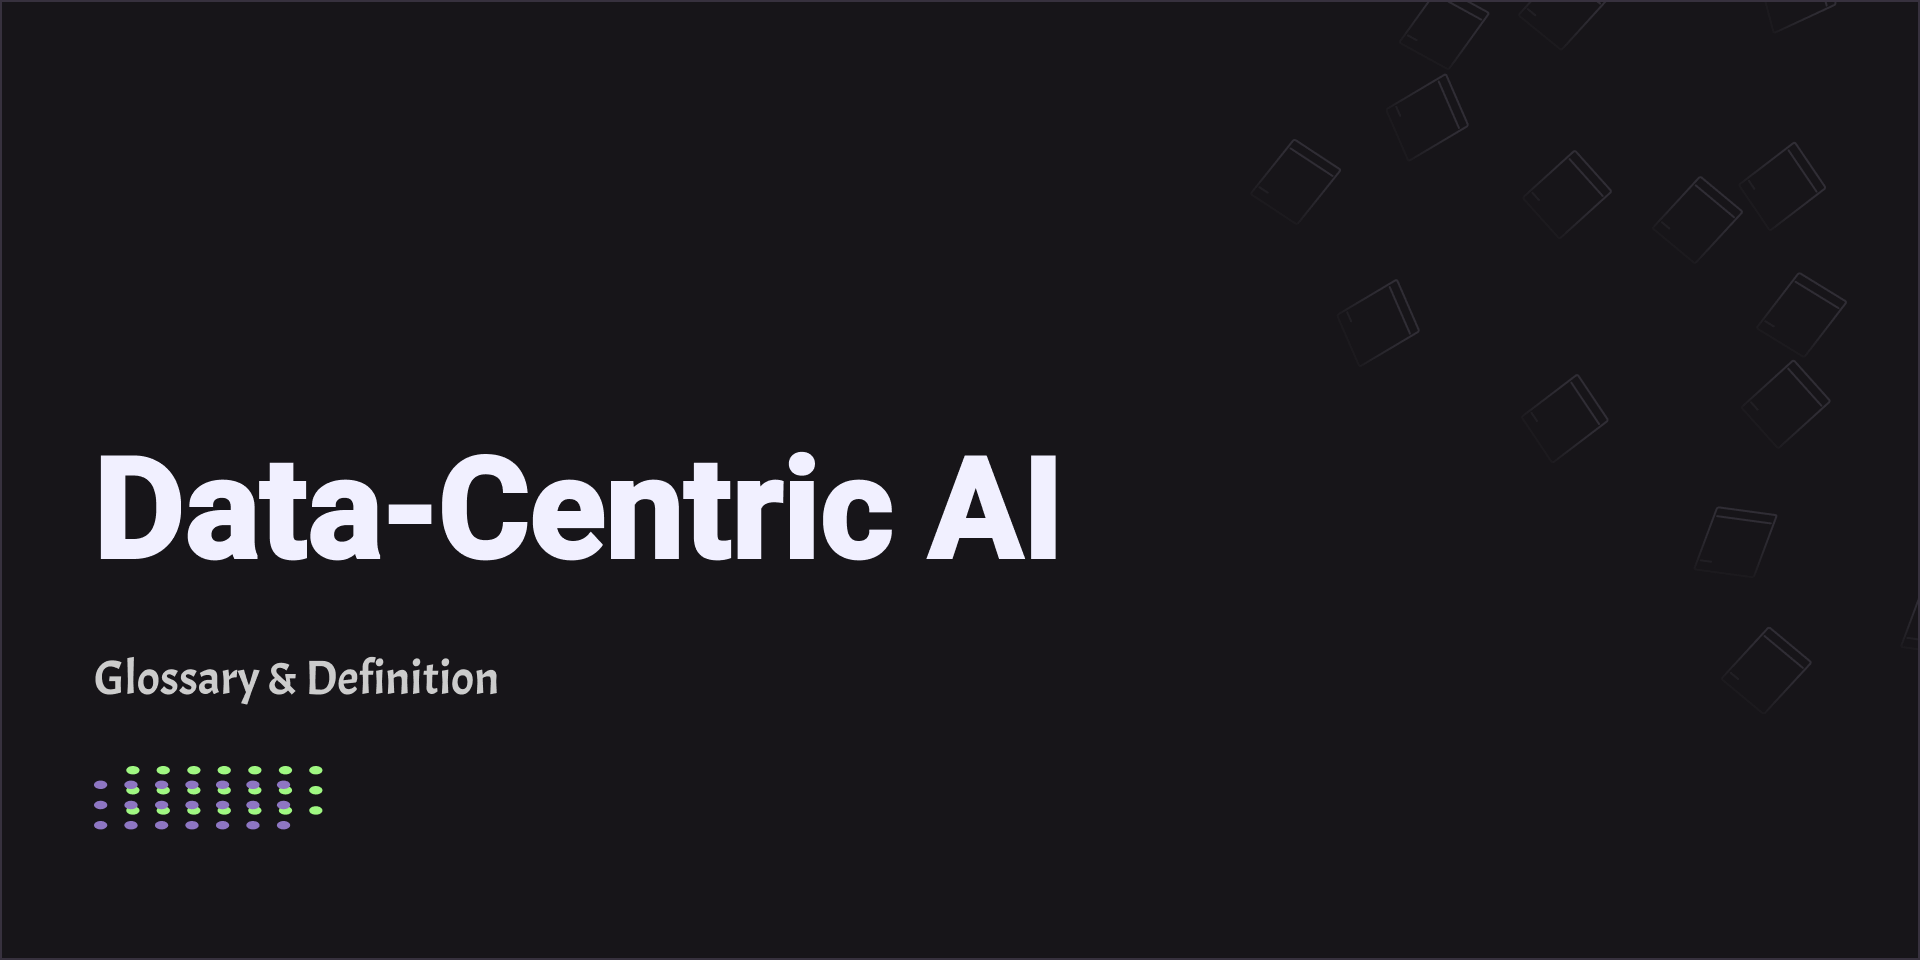 Data-Centric AI